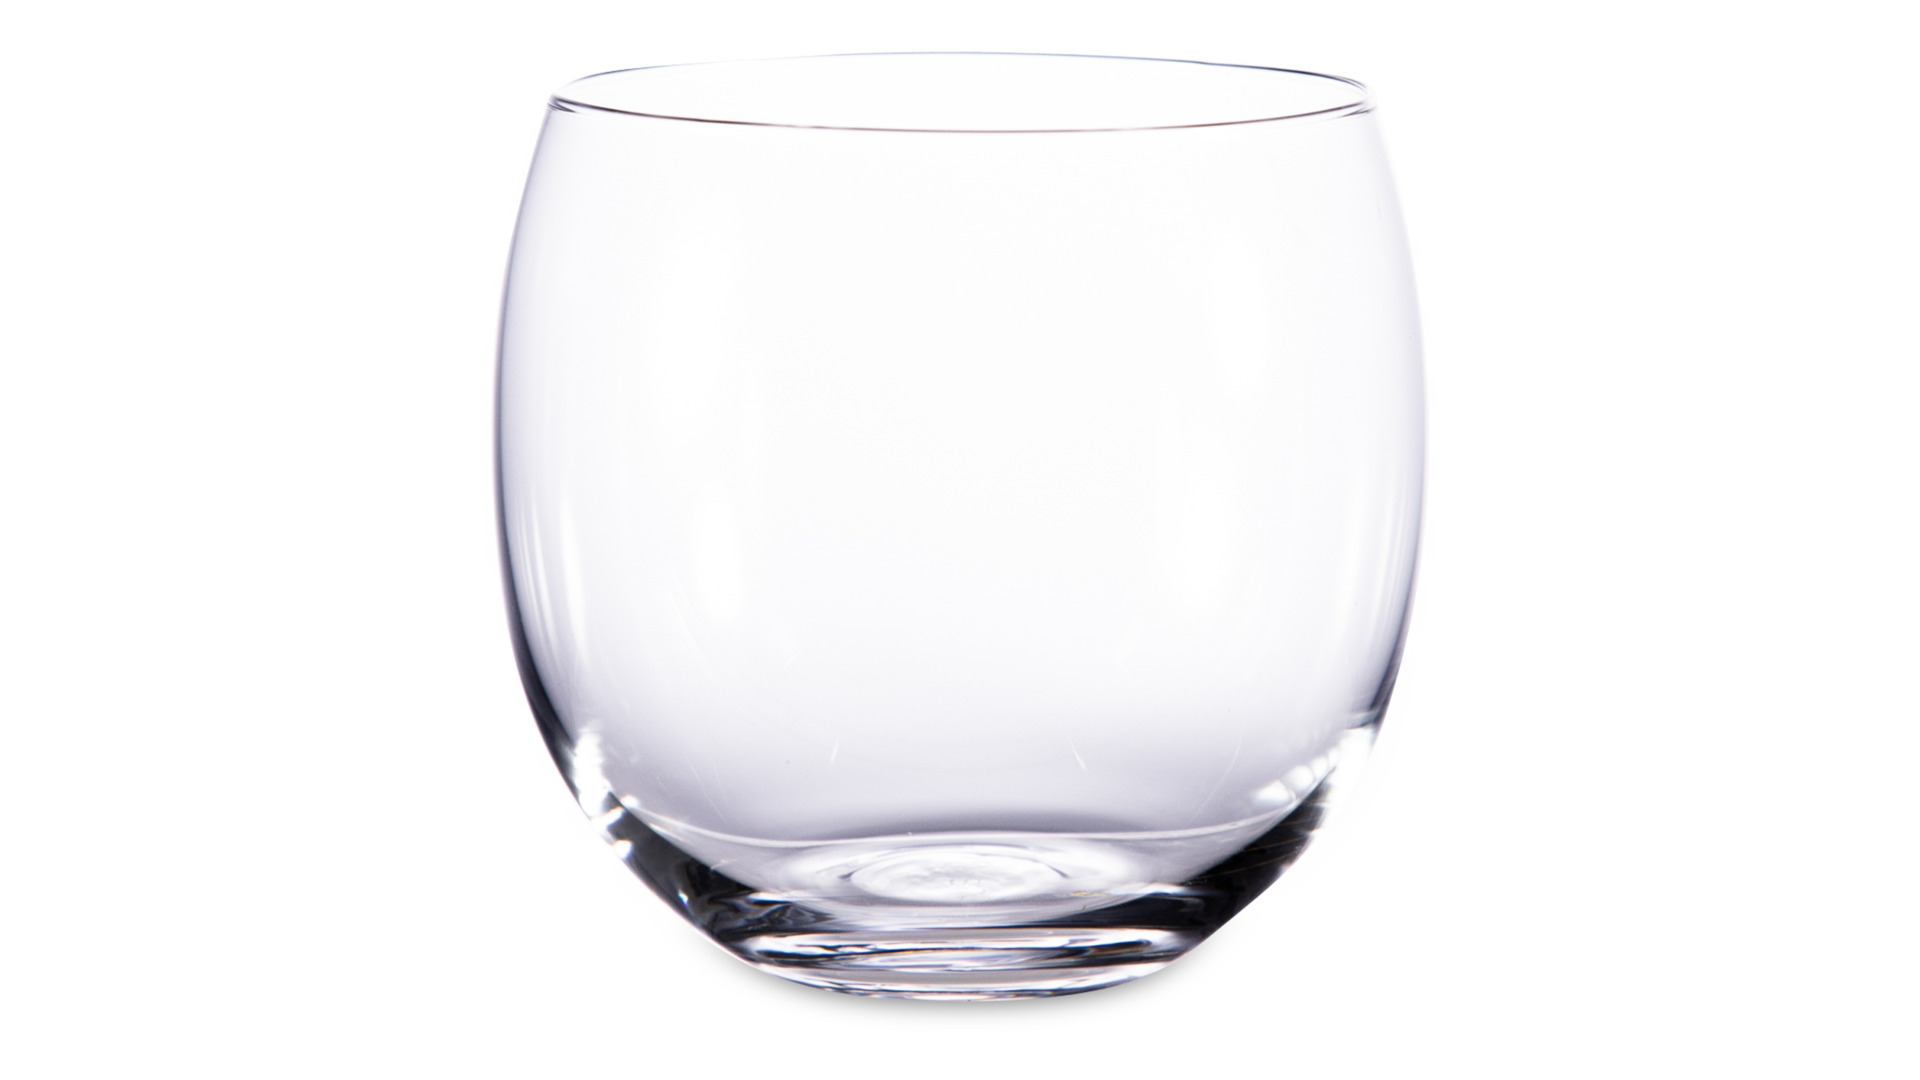 Набор стаканов для воды Krosno Гармония 410 мл, 6 шт